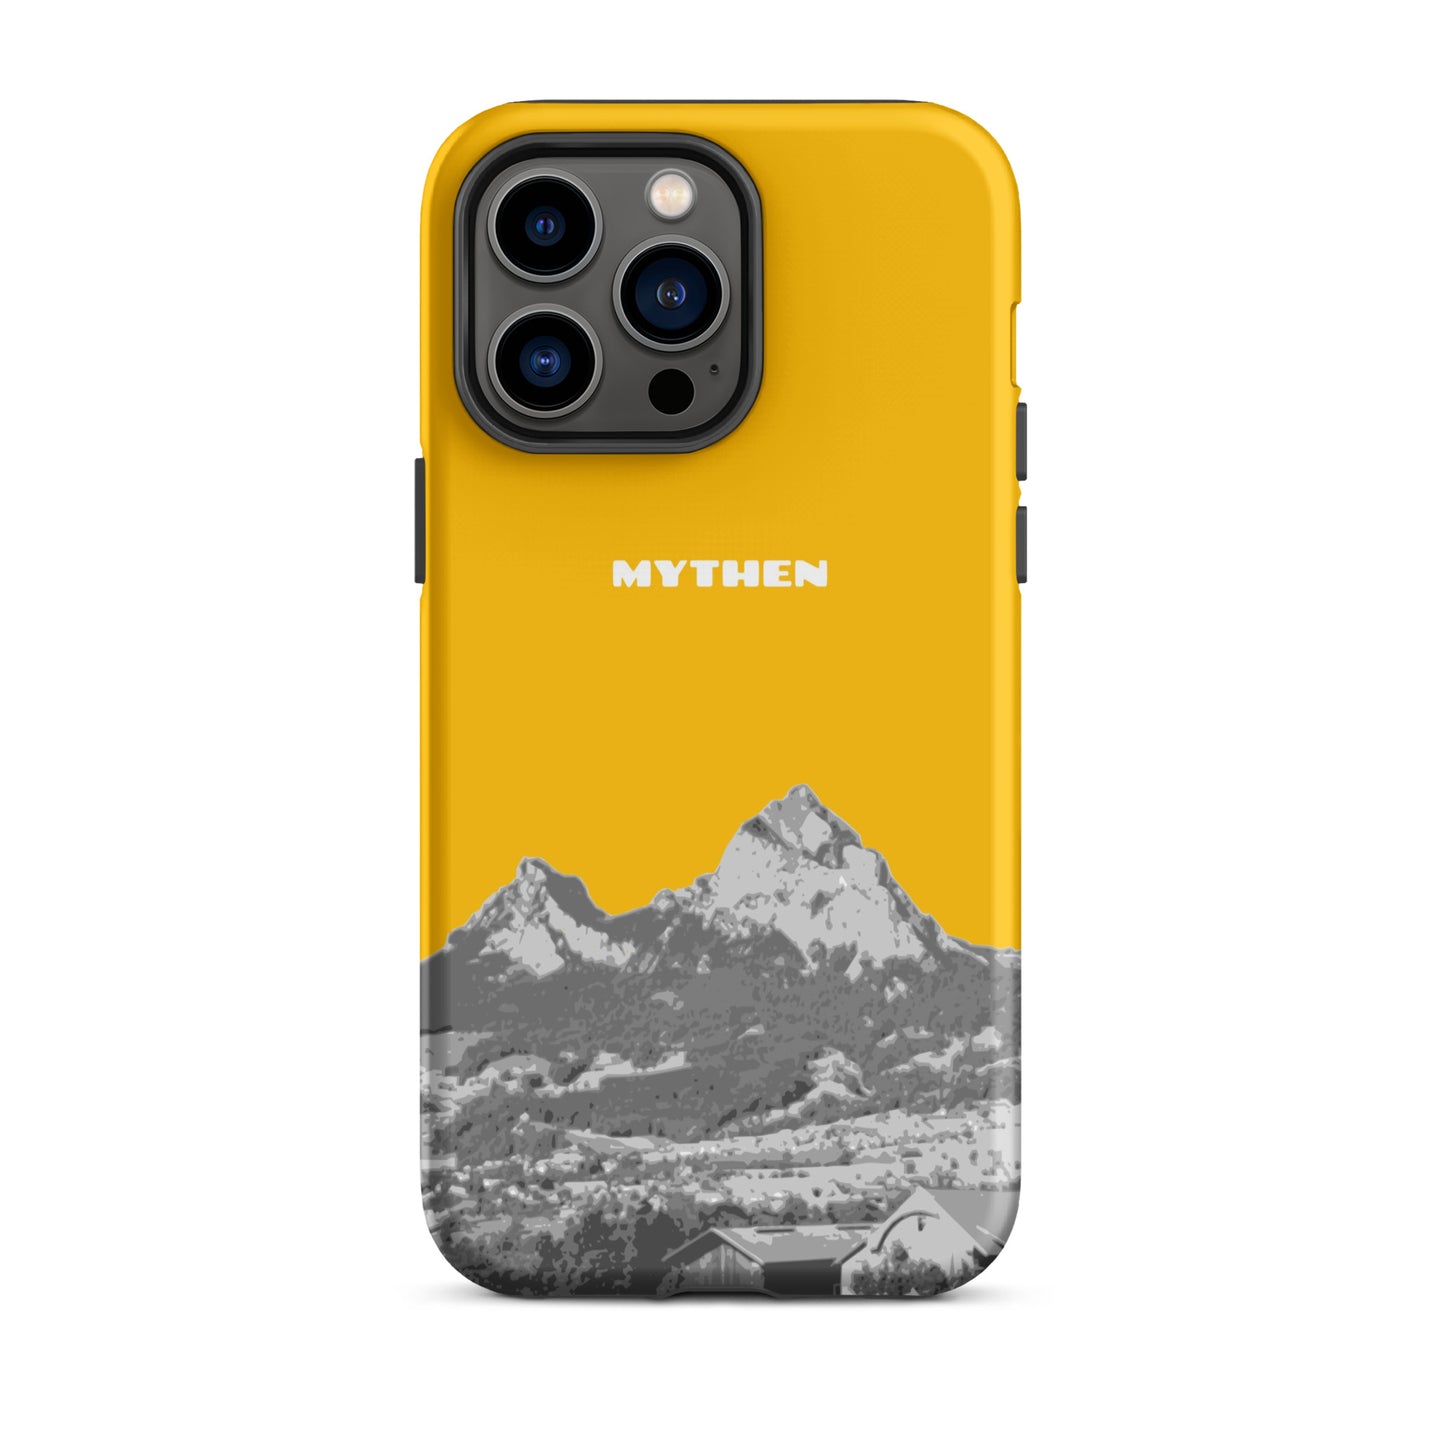 Hülle für das iPhone 14 Pro Max von Apple in der Farbe Goldgelb, dass den Grossen Mythen und den Kleinen Mythen bei Schwyz zeigt. 